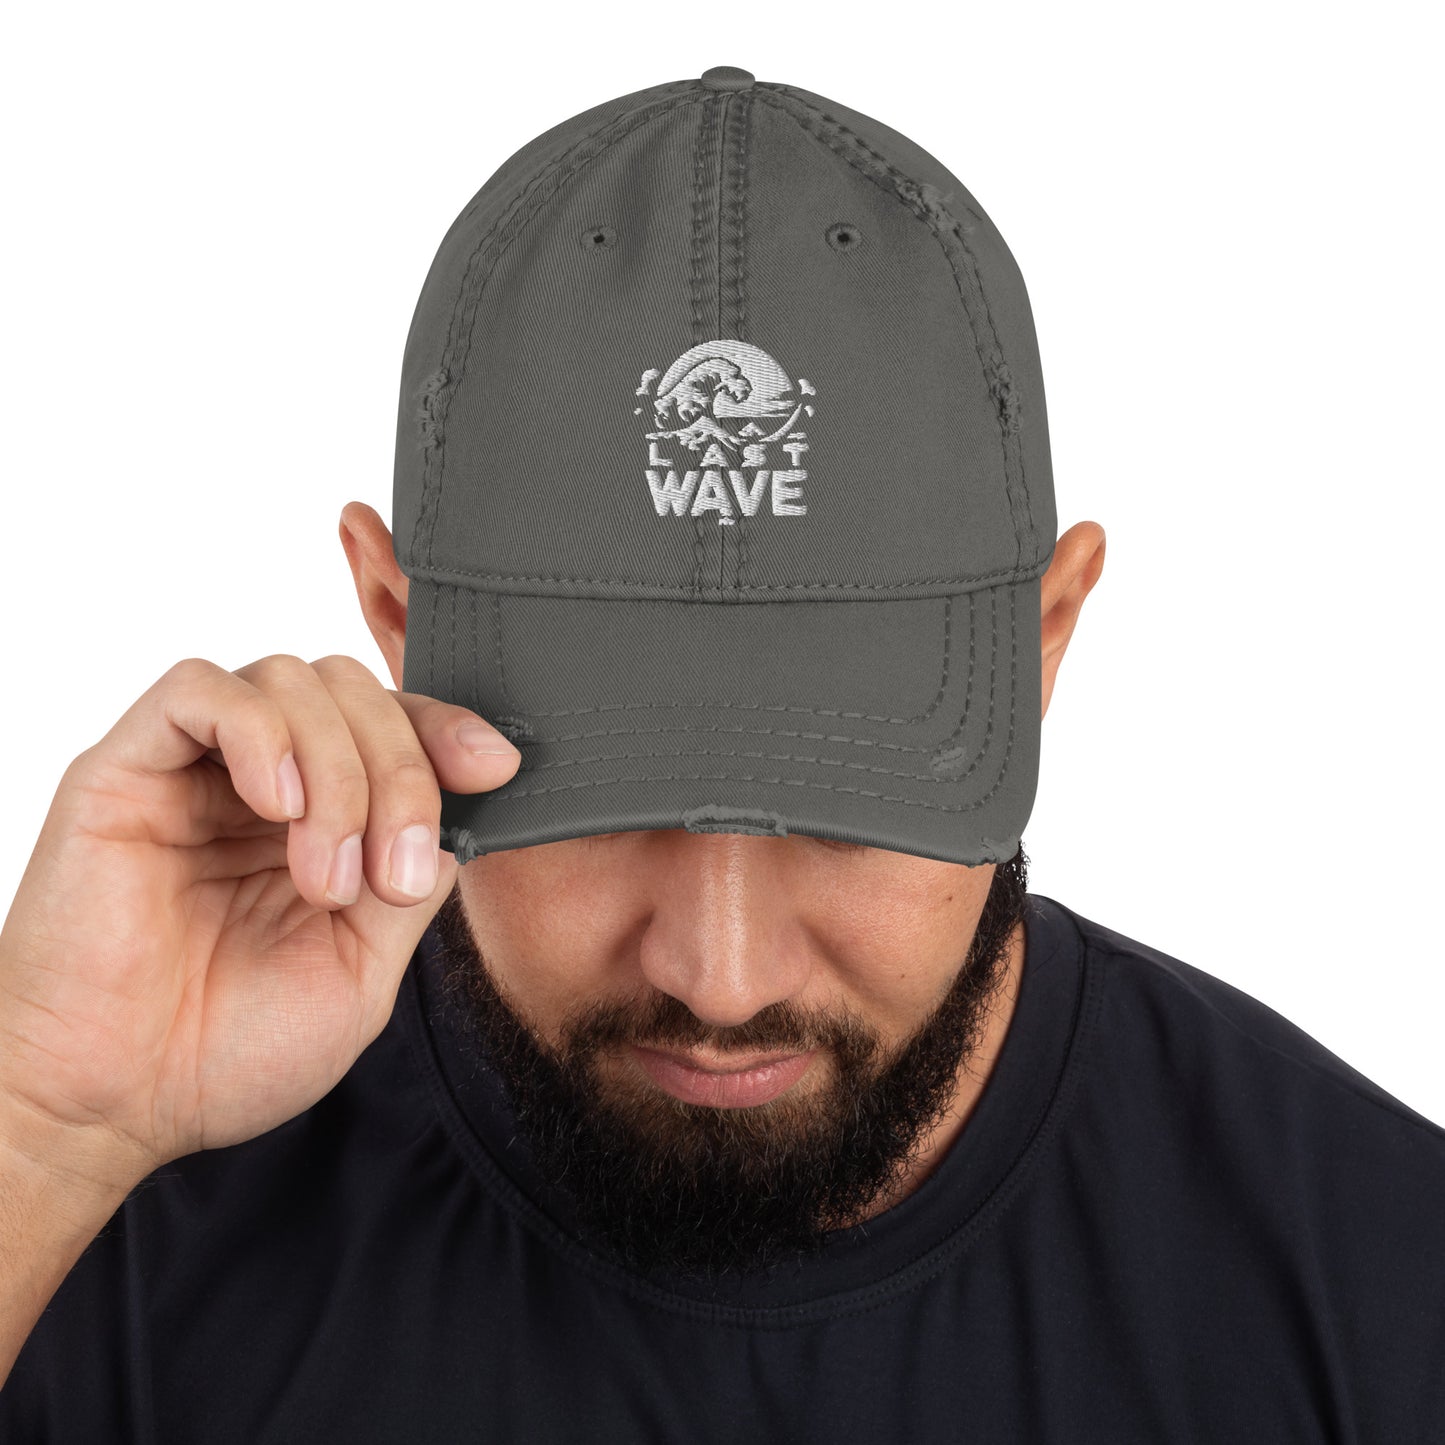 "Last Wave" Cap